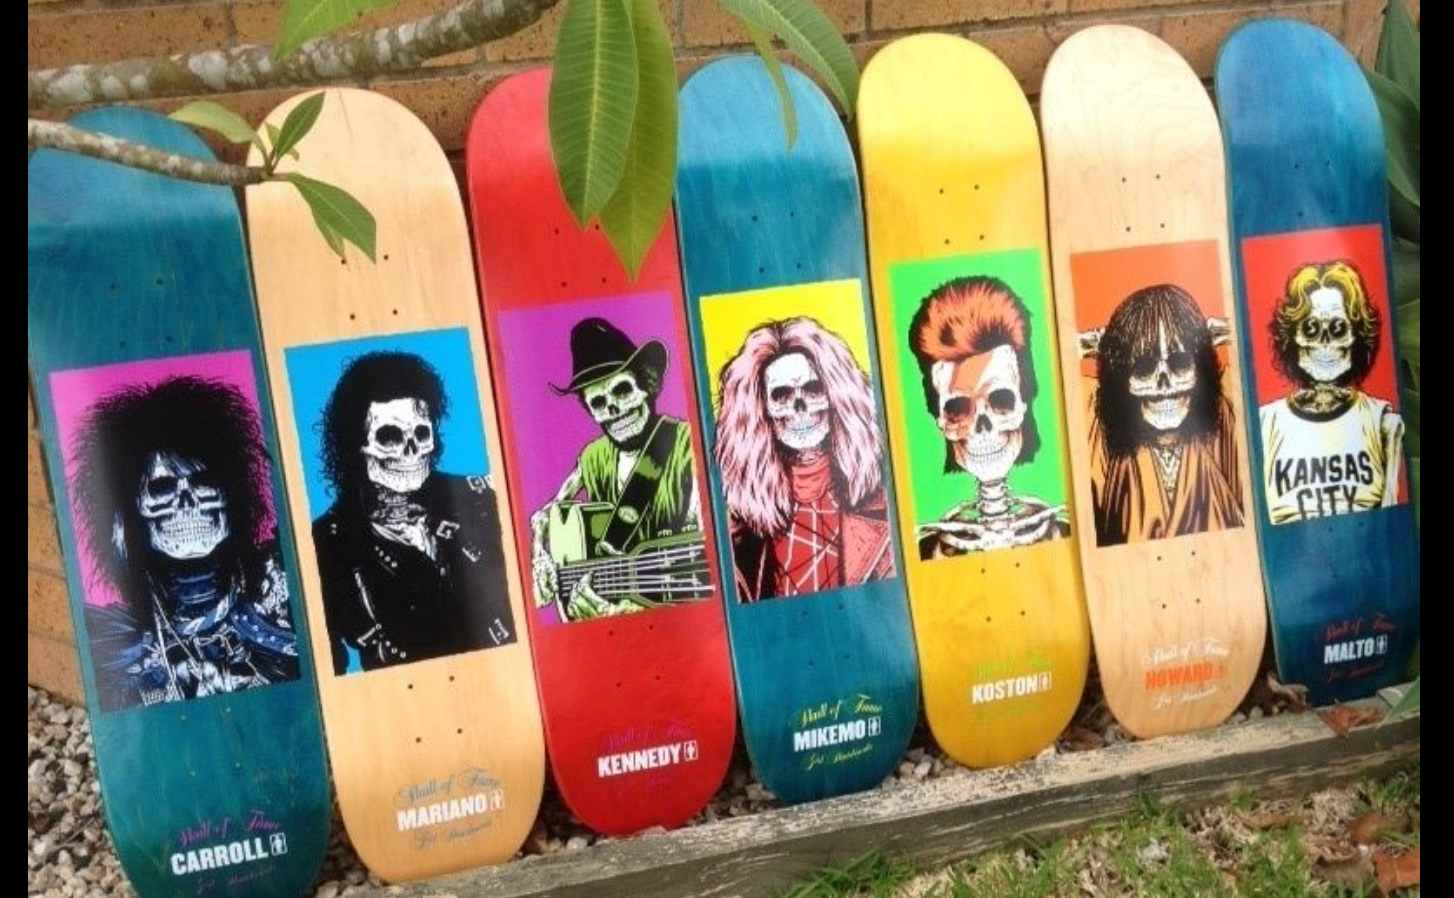 Girl & Chocolate Skateboards - Quelques modèles & séries collectors